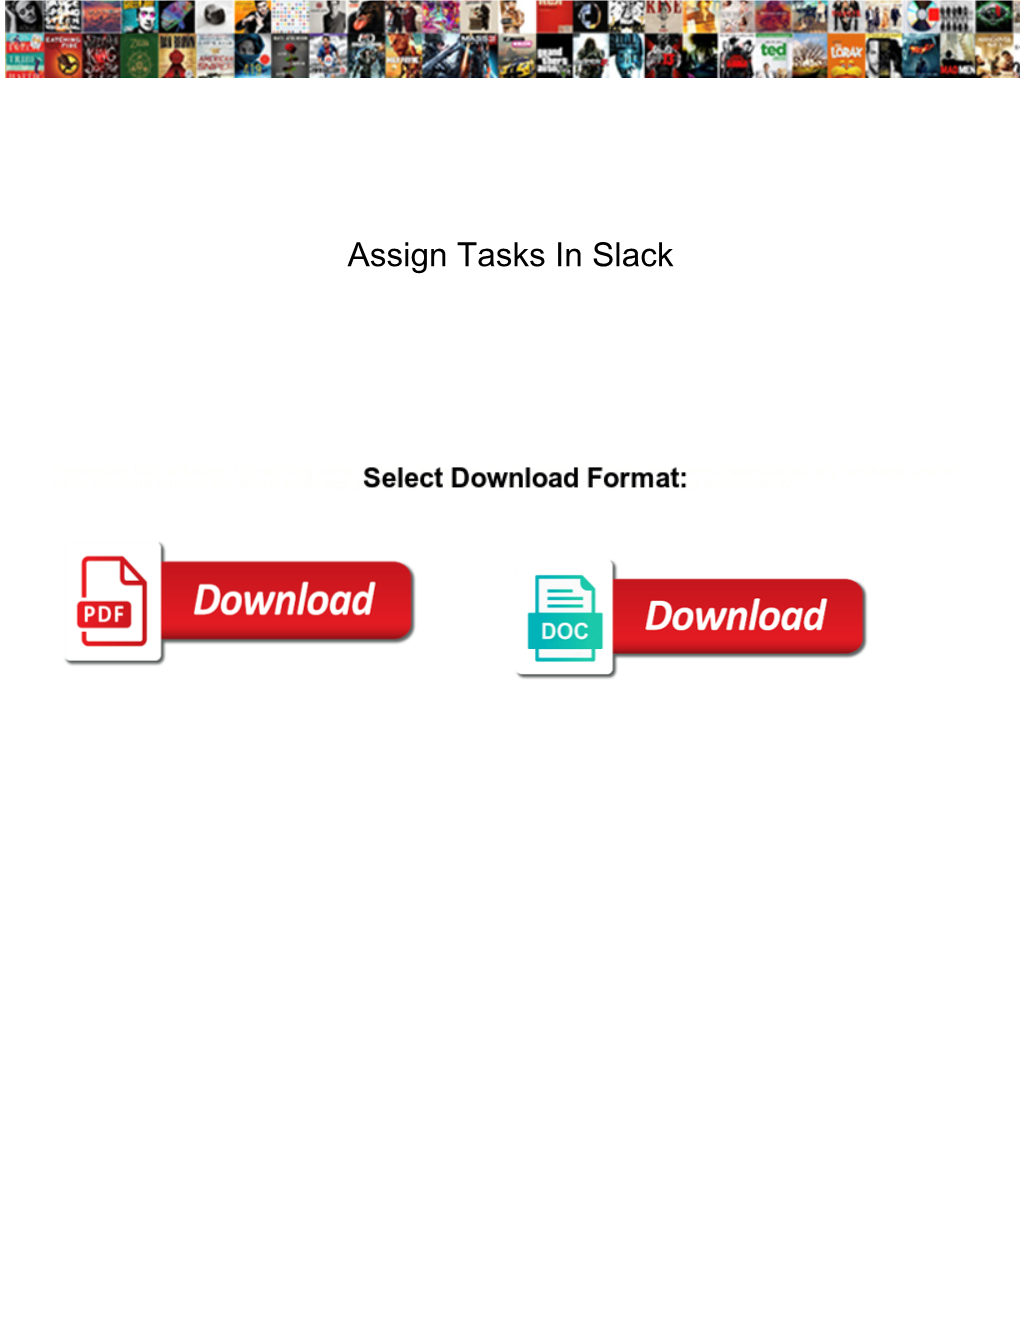 Assign Tasks in Slack